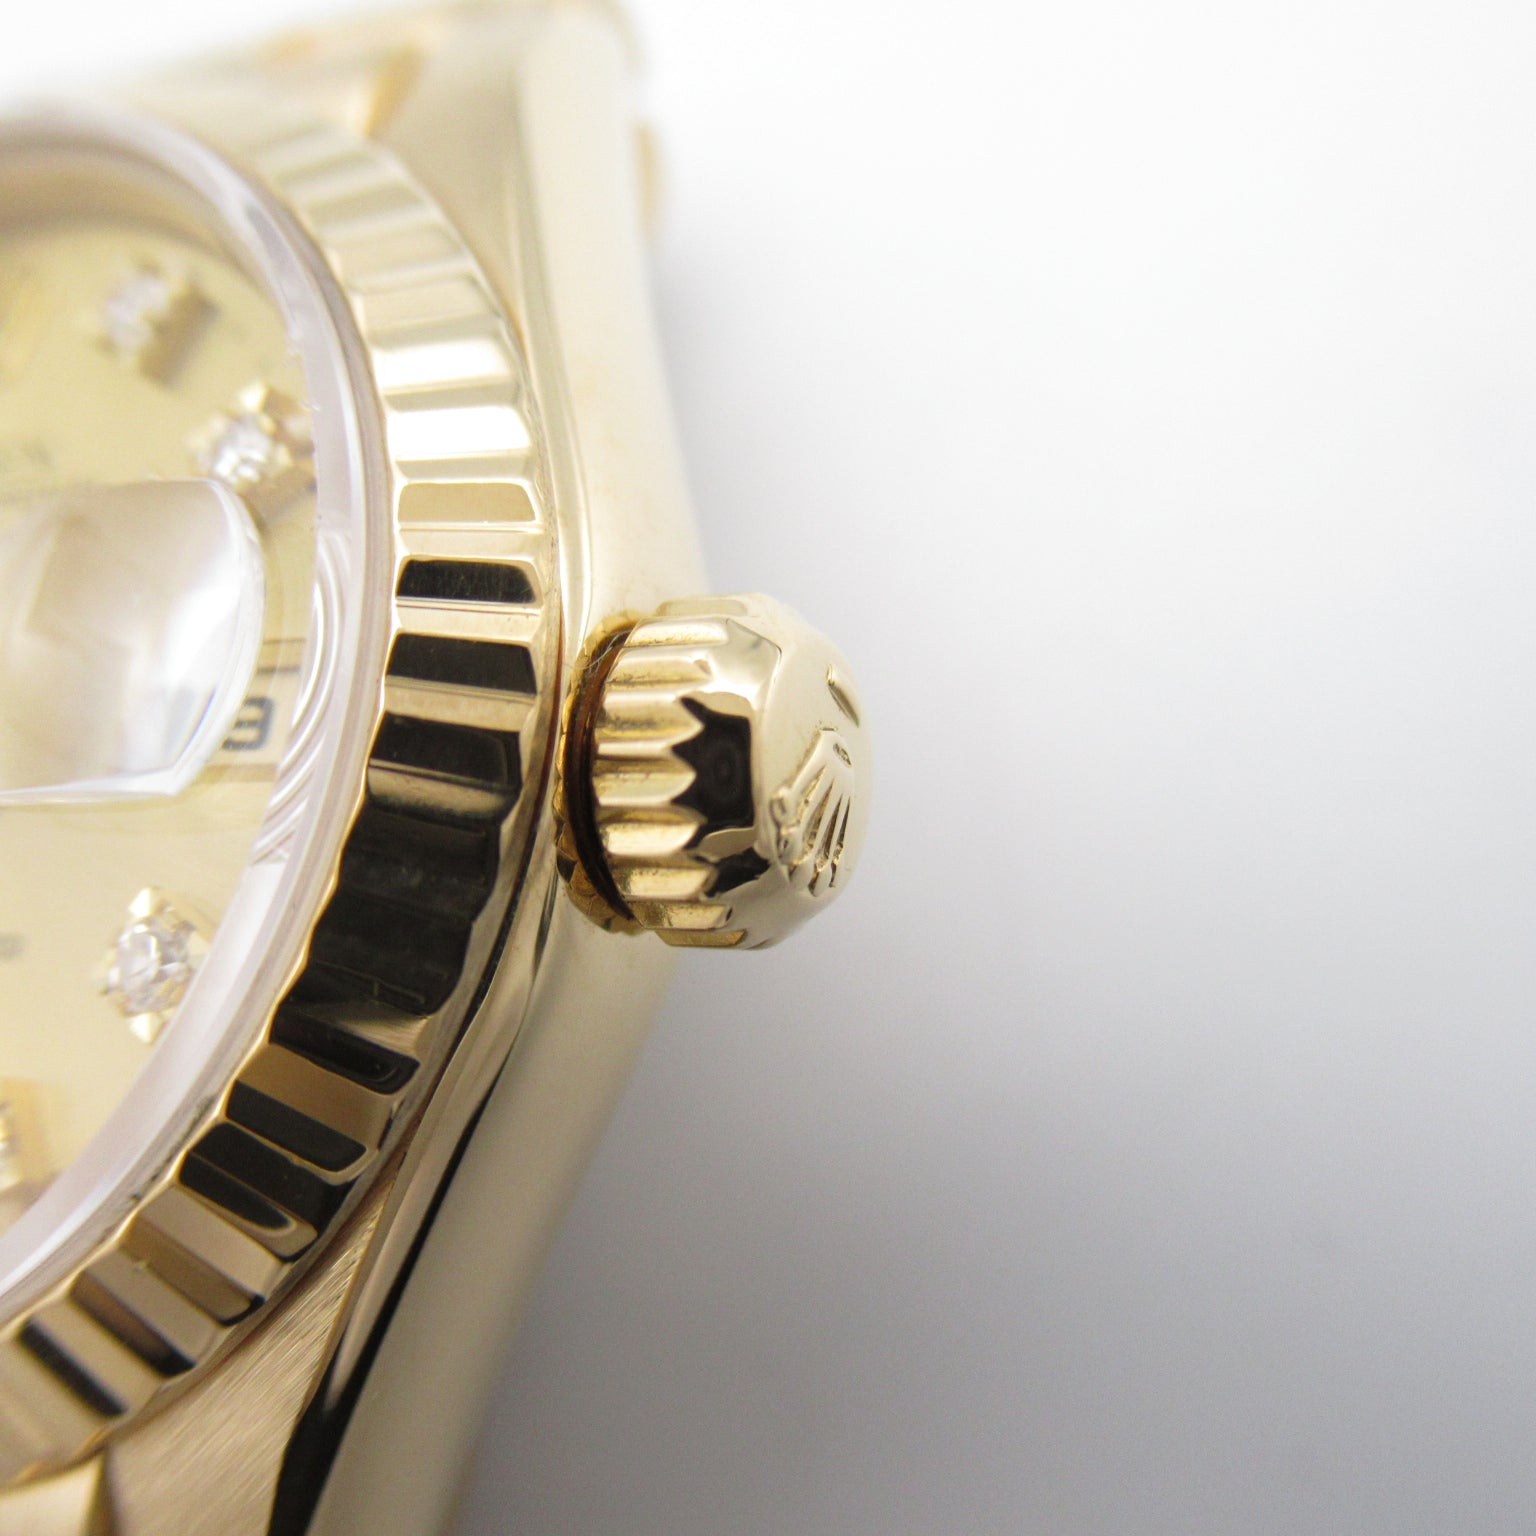 Rolex Rolex 10P Diamond S  Watch K18 (Yellow G)  Gold CH/QP 69178G